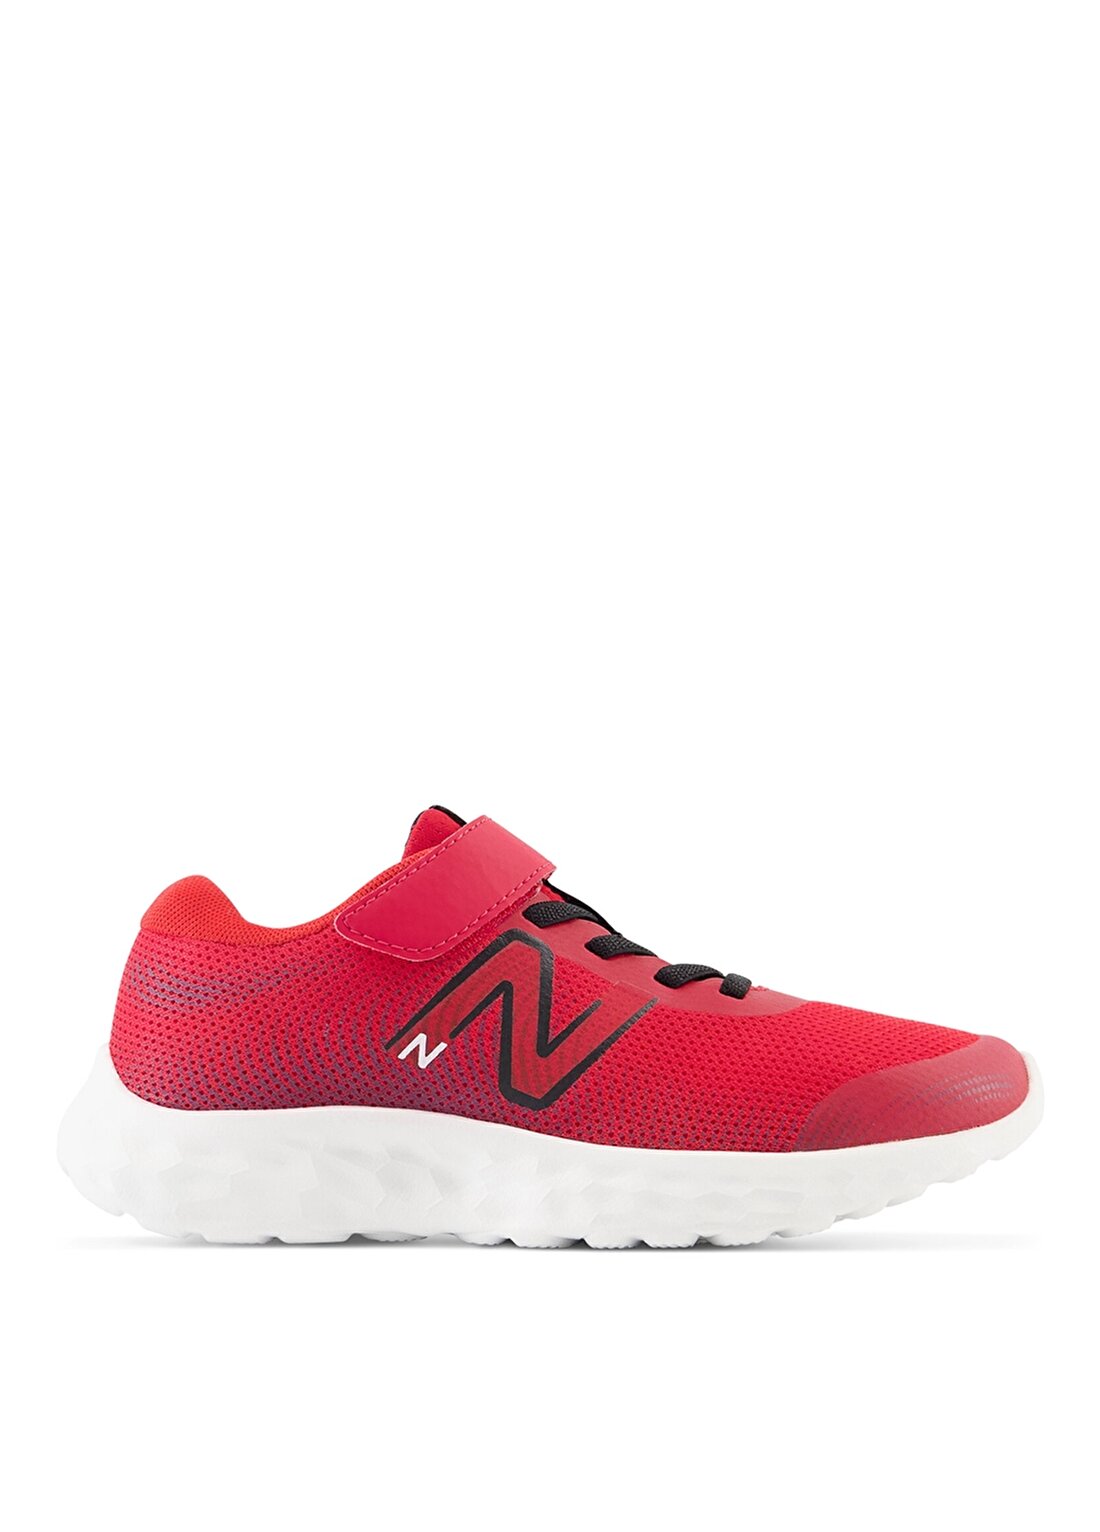 New Balance Kırmızı Kız Çocuk Yürüyüş Ayakkabısı PA520TR8 NB Running Preschool Sh